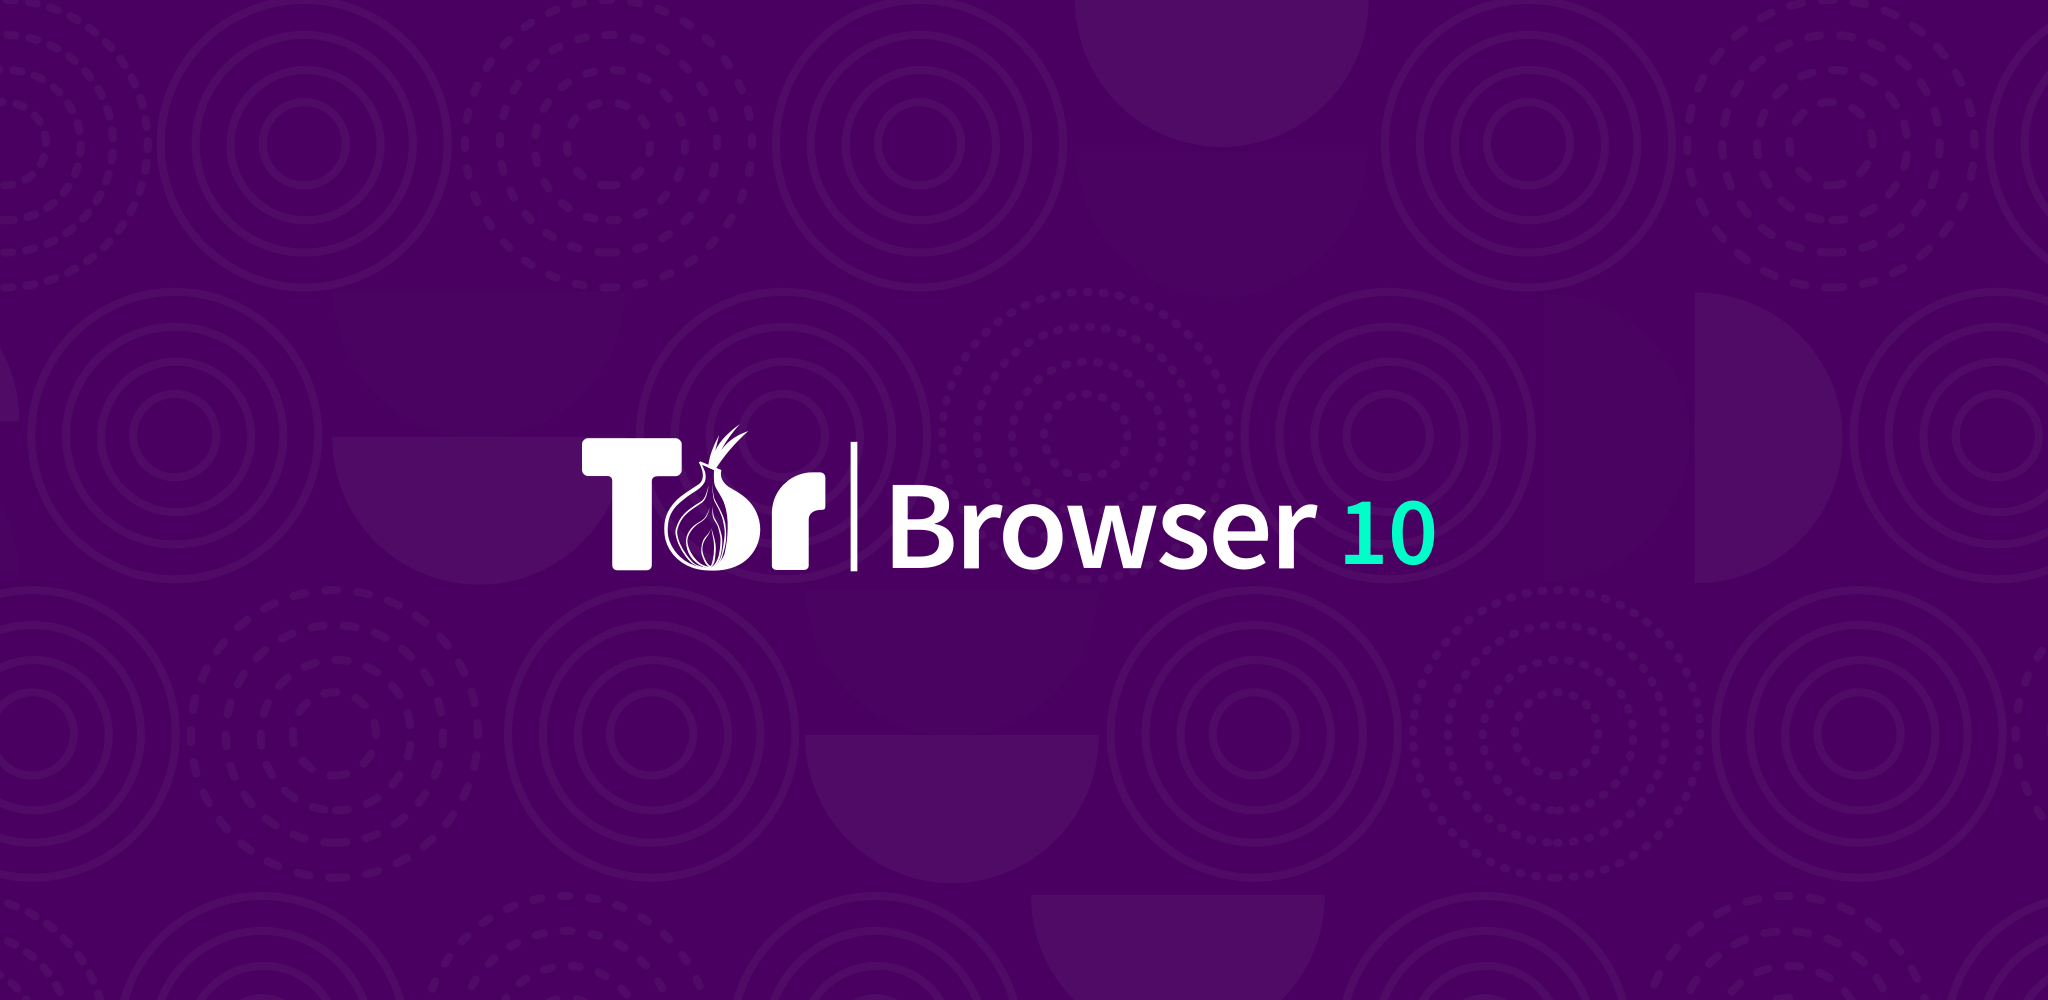 Tor browser плагин скачать хорхе конопля